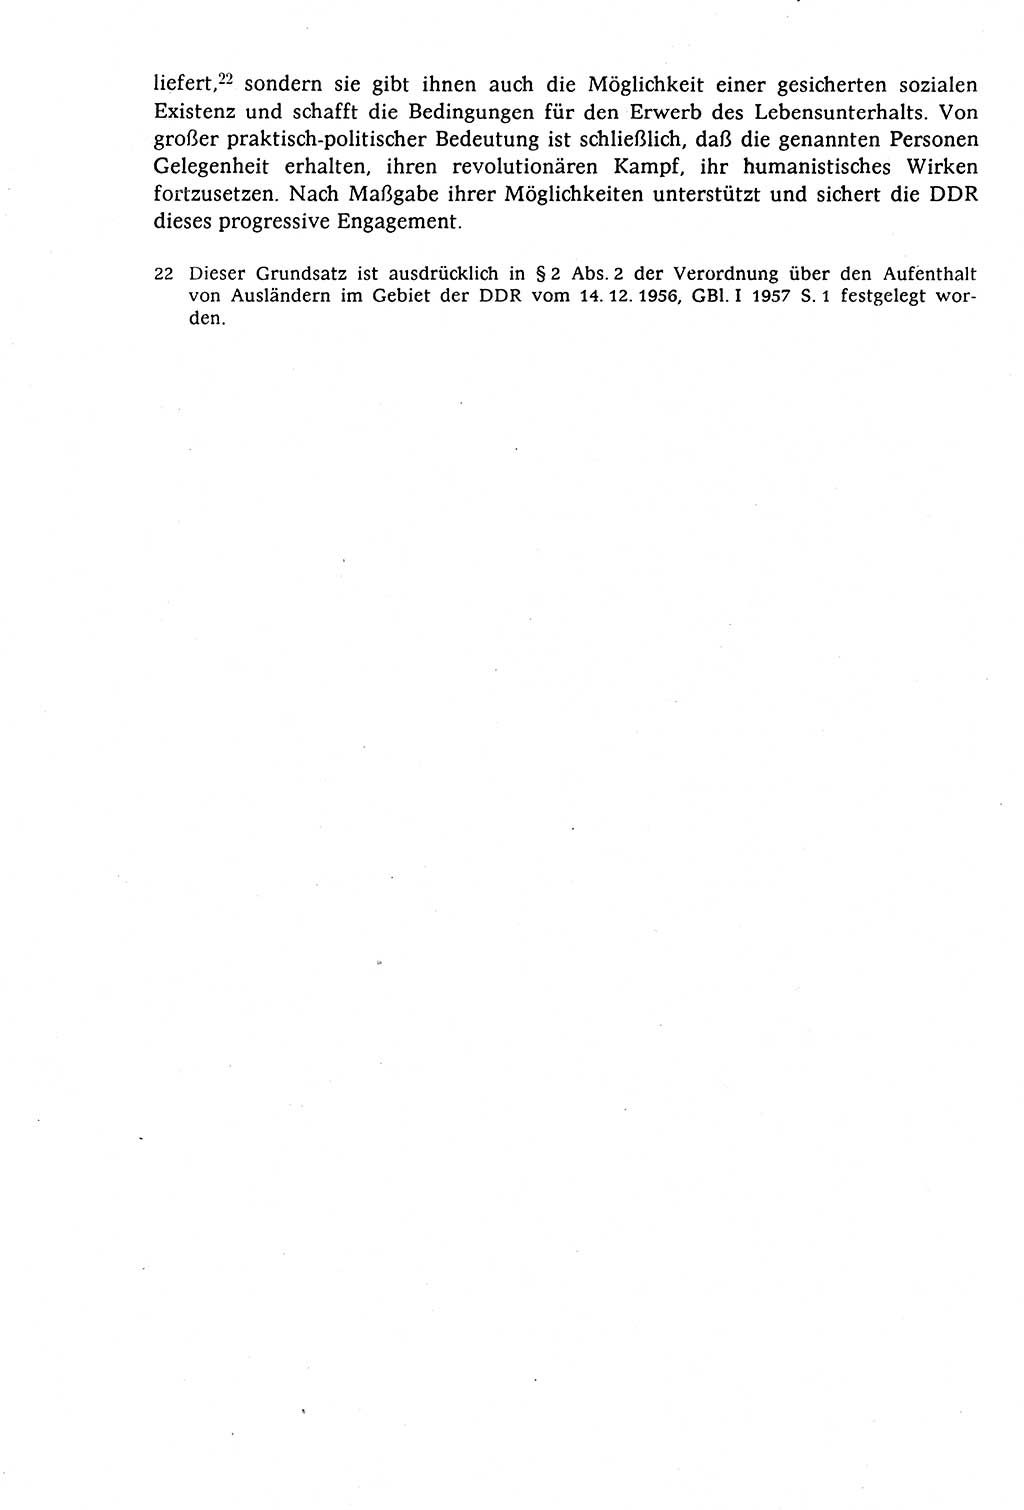 Staatsrecht der DDR (Deutsche Demokratische Republik), Lehrbuch 1977, Seite 174 (St.-R. DDR Lb. 1977, S. 174)